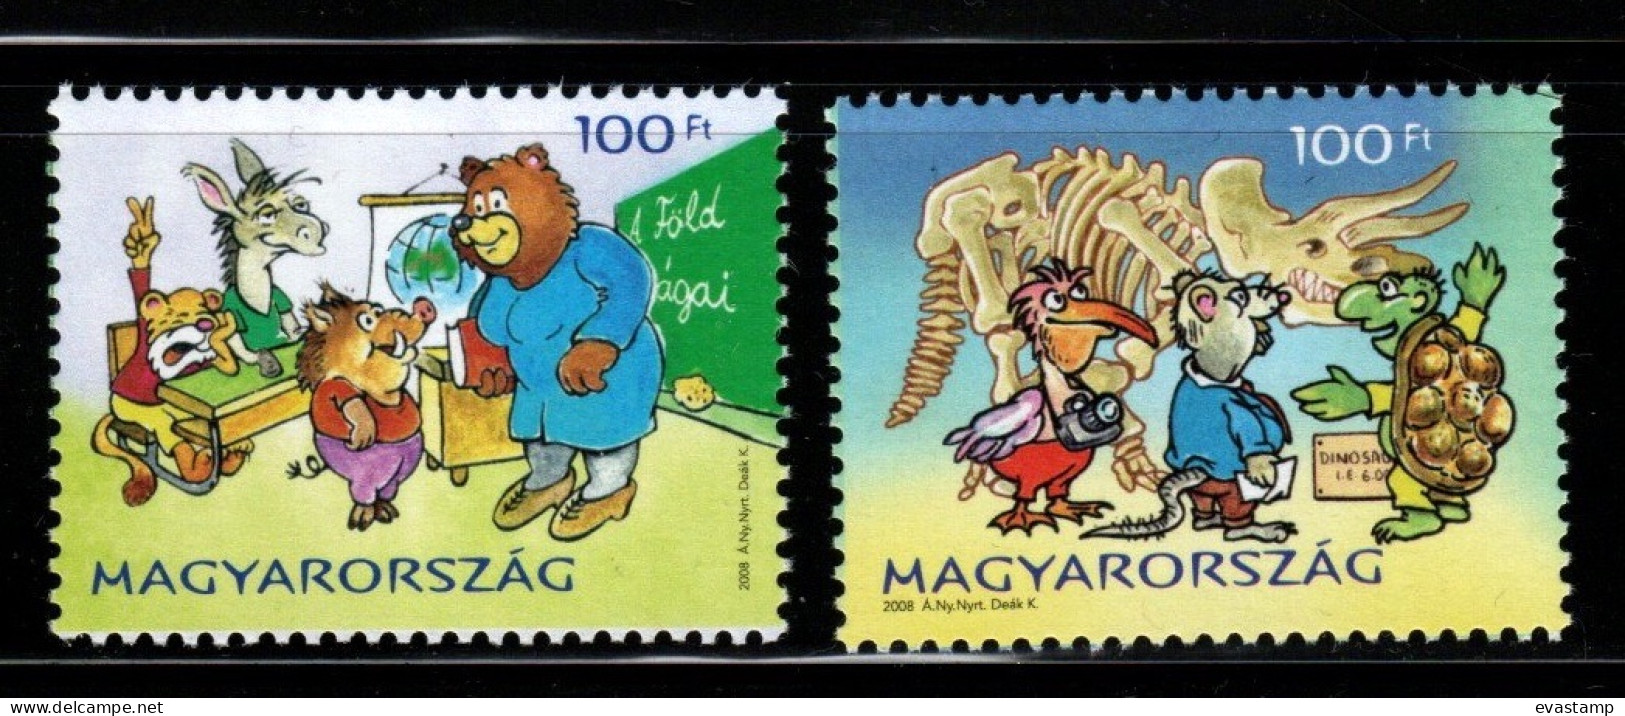 HUNGARY - 2008. Cartoons / Fairy Tales - Fila Village IV. MNH!! - Ongebruikt